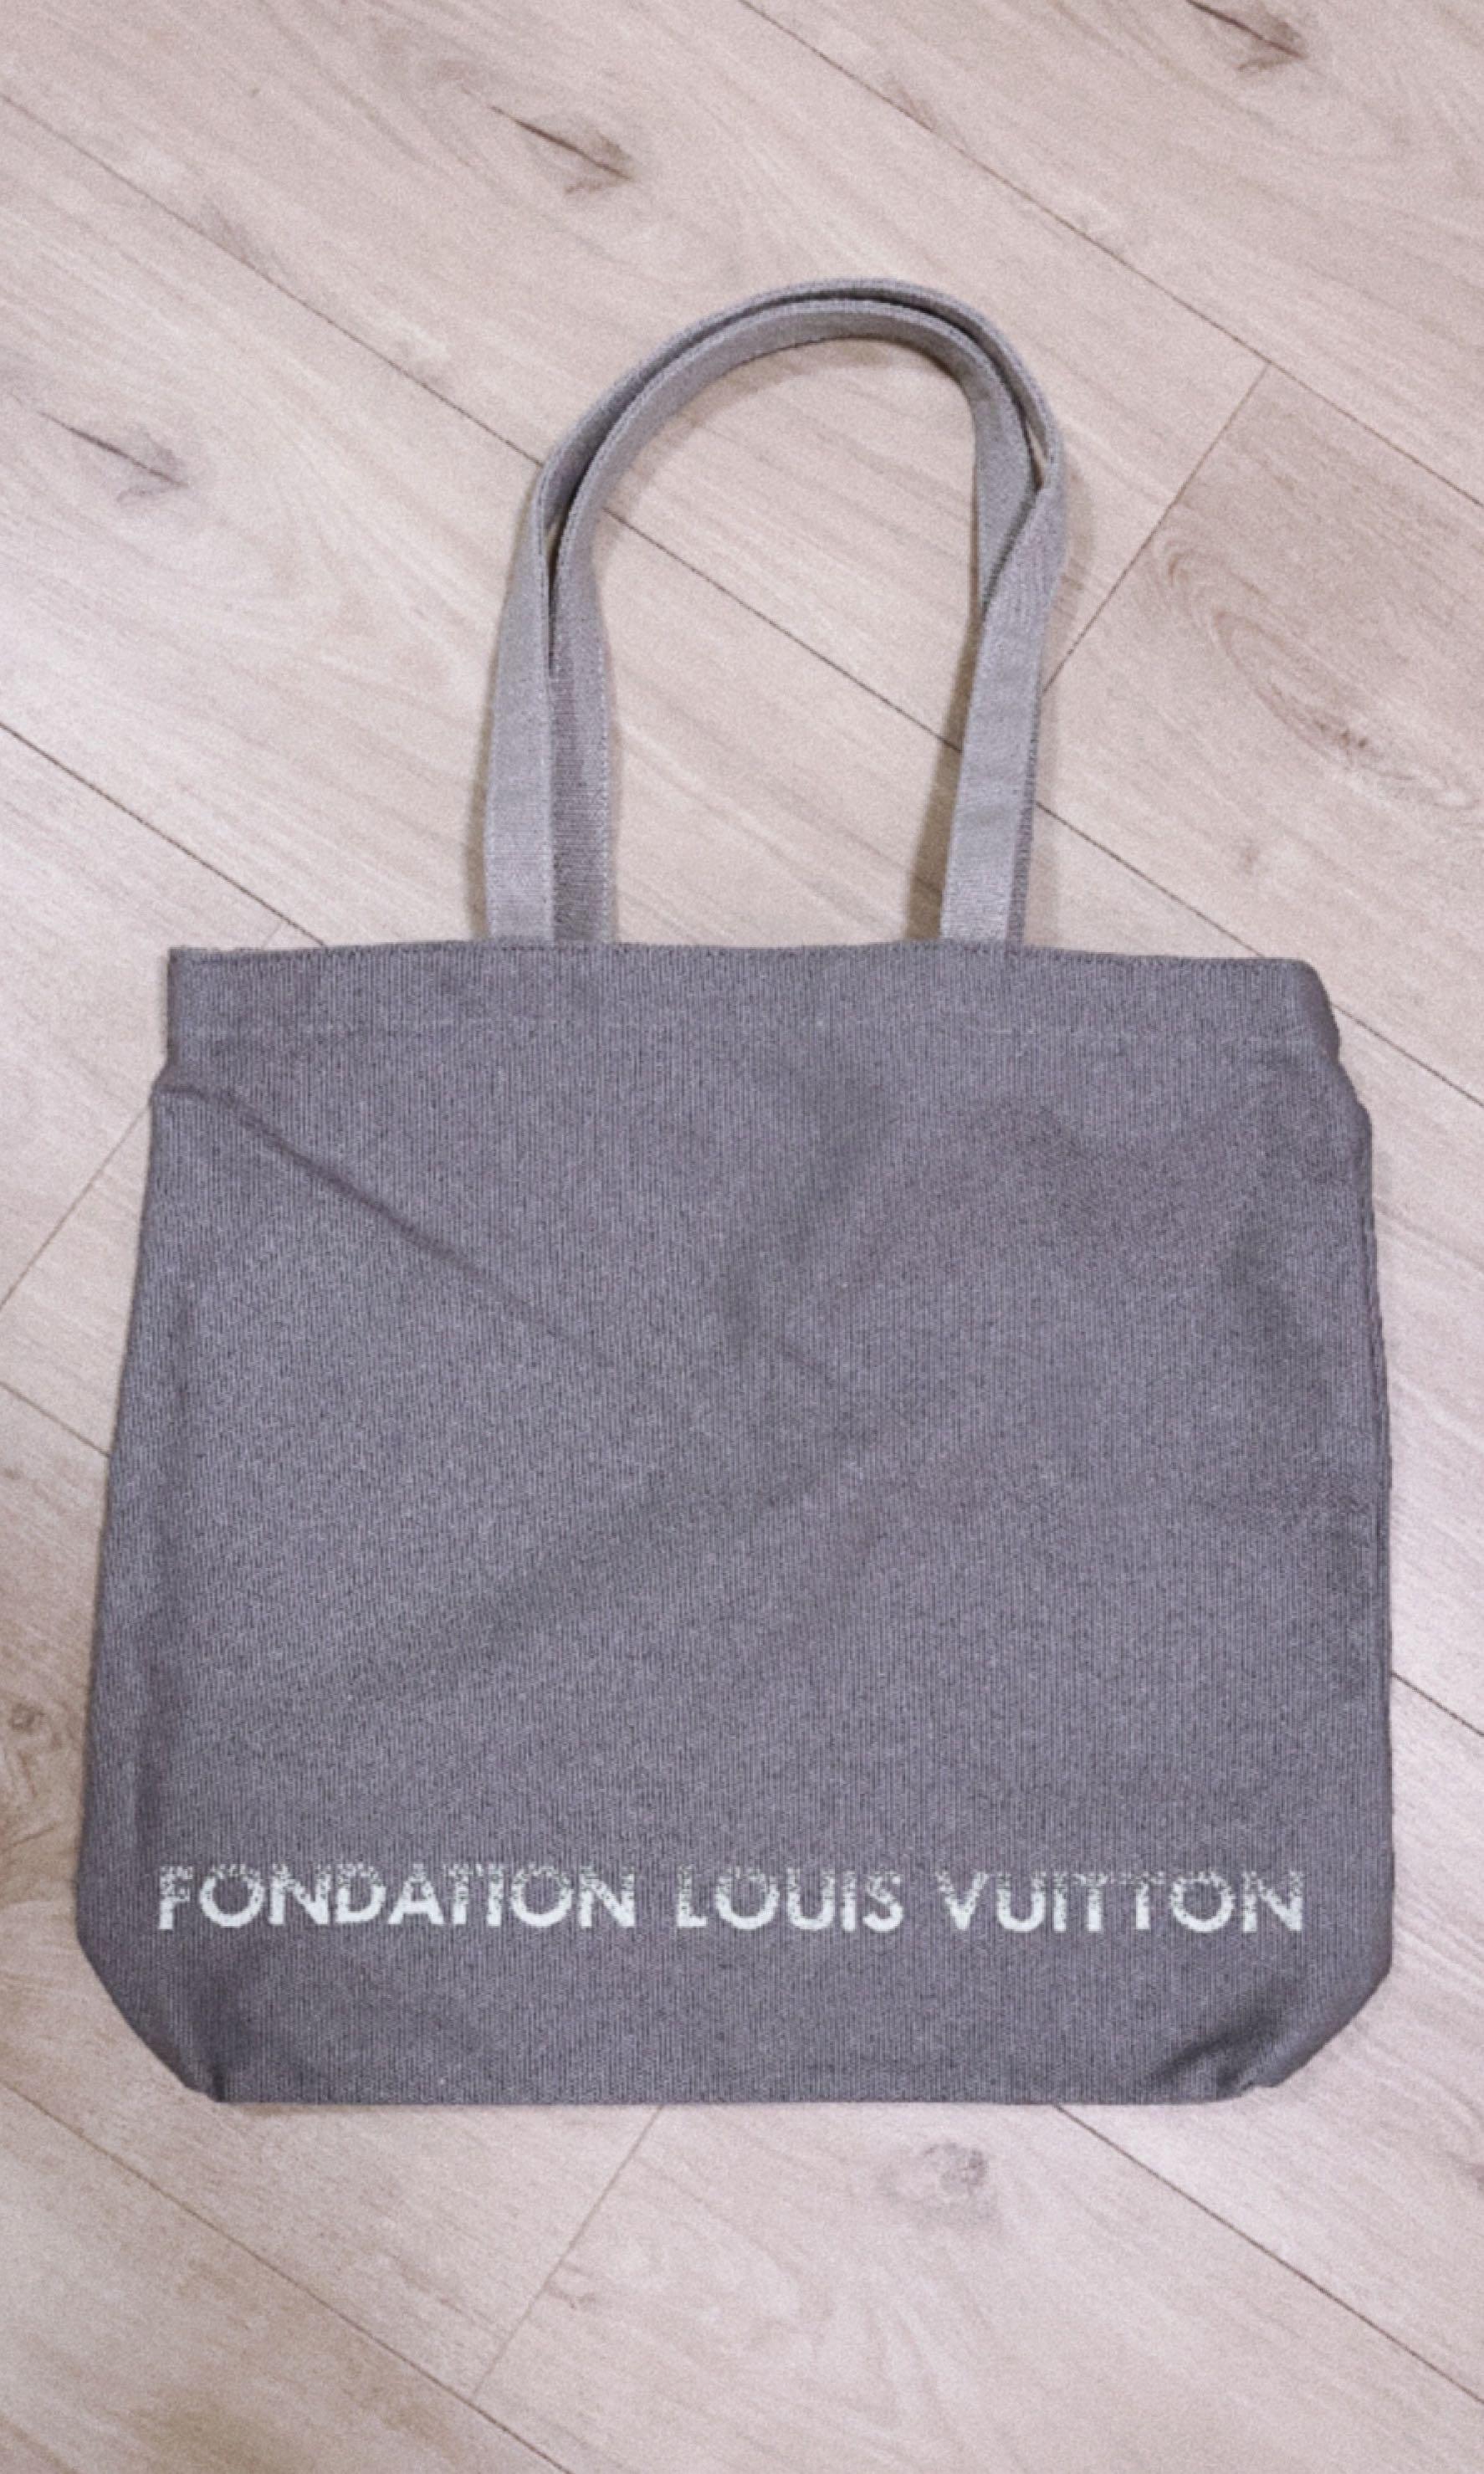 LOUIS VUITTON Museum Tote Bag FONDATION Canvas Gray Ladies